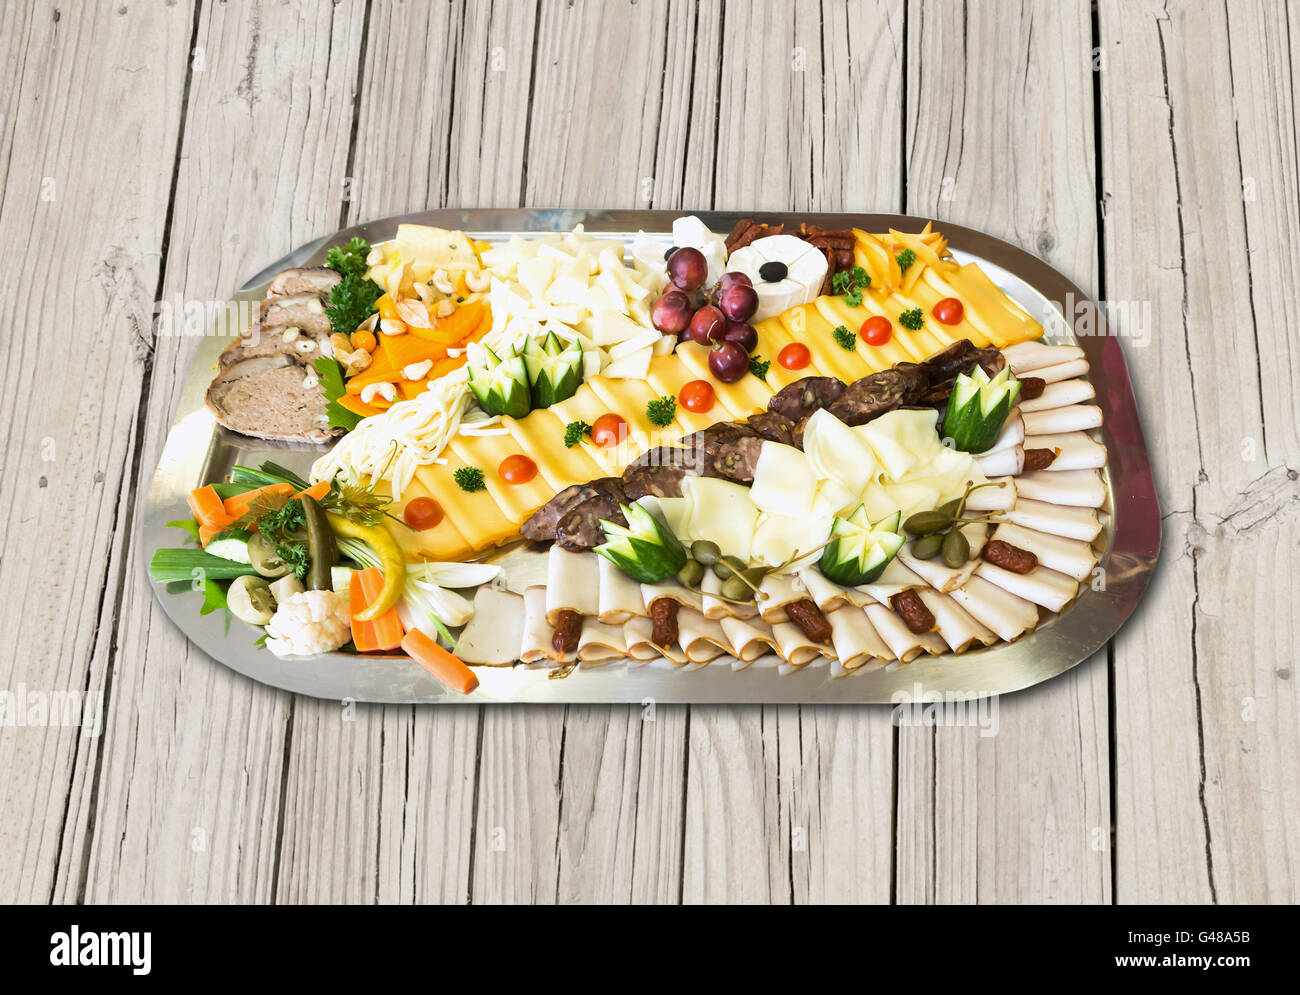 Kalte Platte mit Schinken, Käse, Oliven, Wurst, frisches Obst und Gemüse auf Holztisch Stockfoto